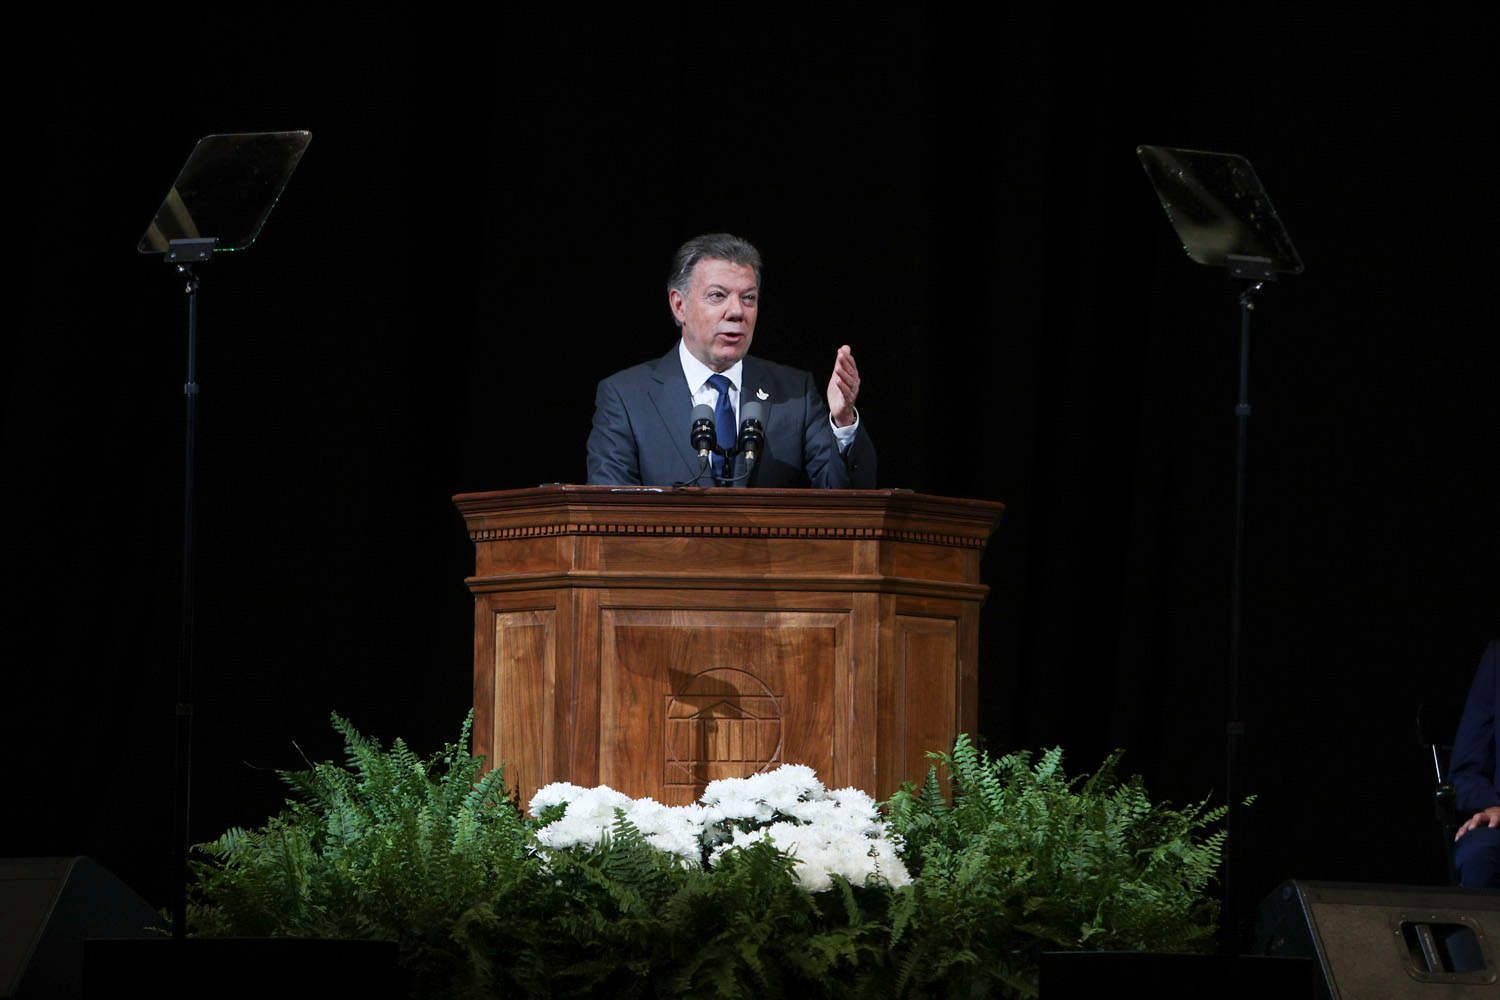 Colombian President Juan Manuel Santos delivered the keynote address during an award celebration